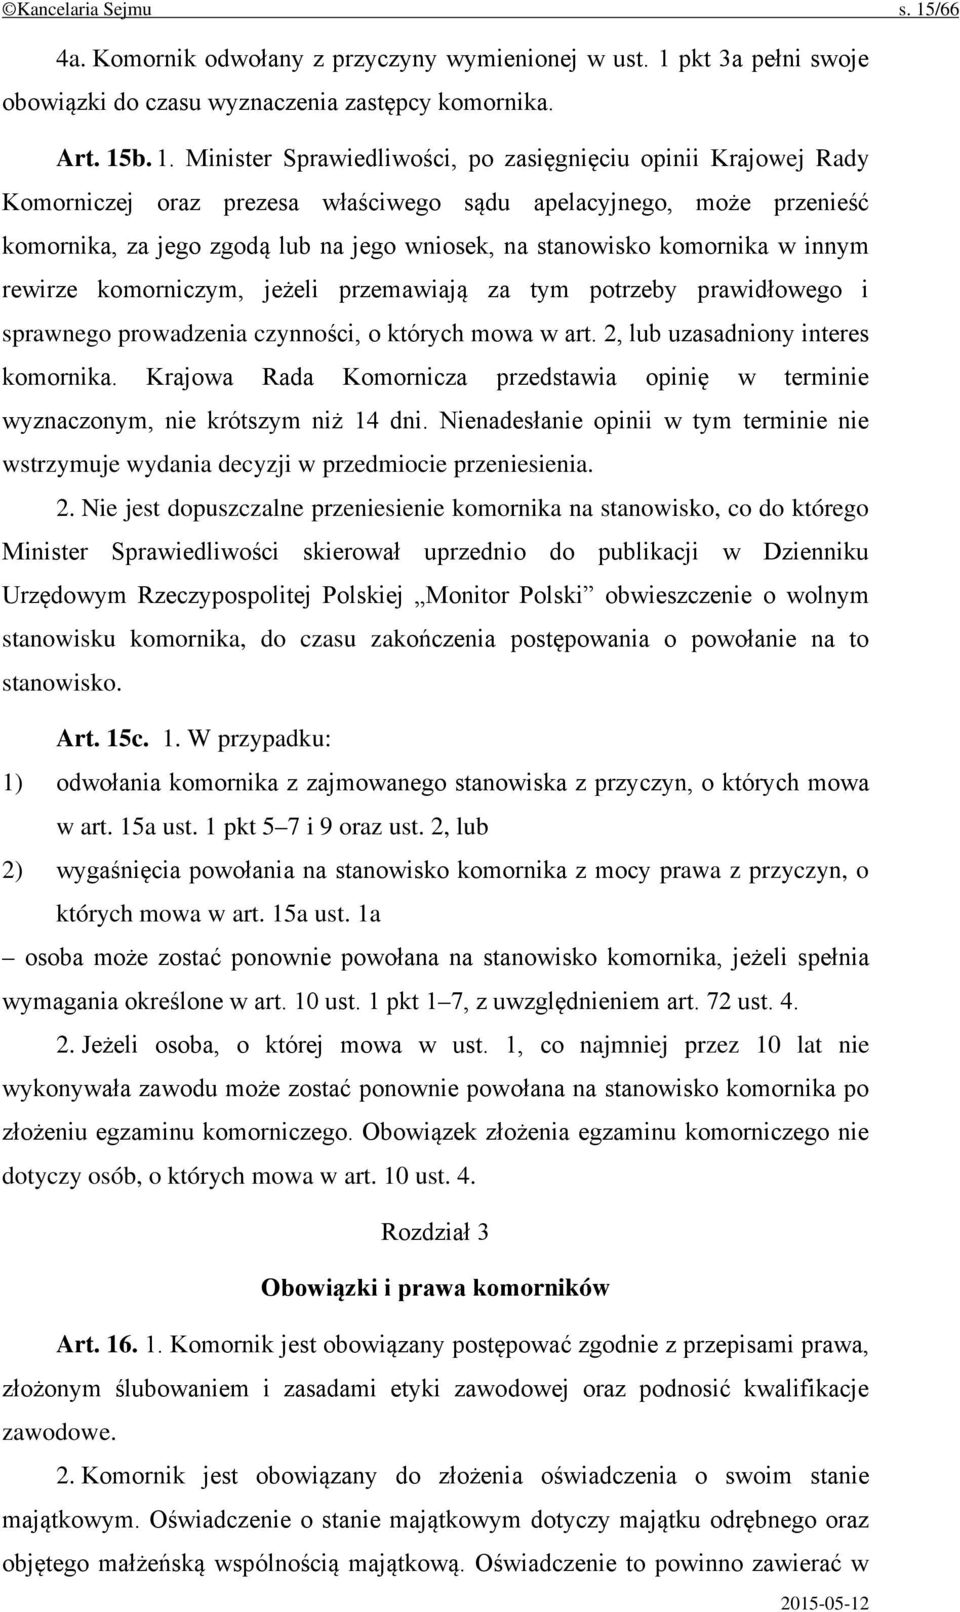 pkt 3a pełni swoje obowiązki do czasu wyznaczenia zastępcy komornika. Art. 15